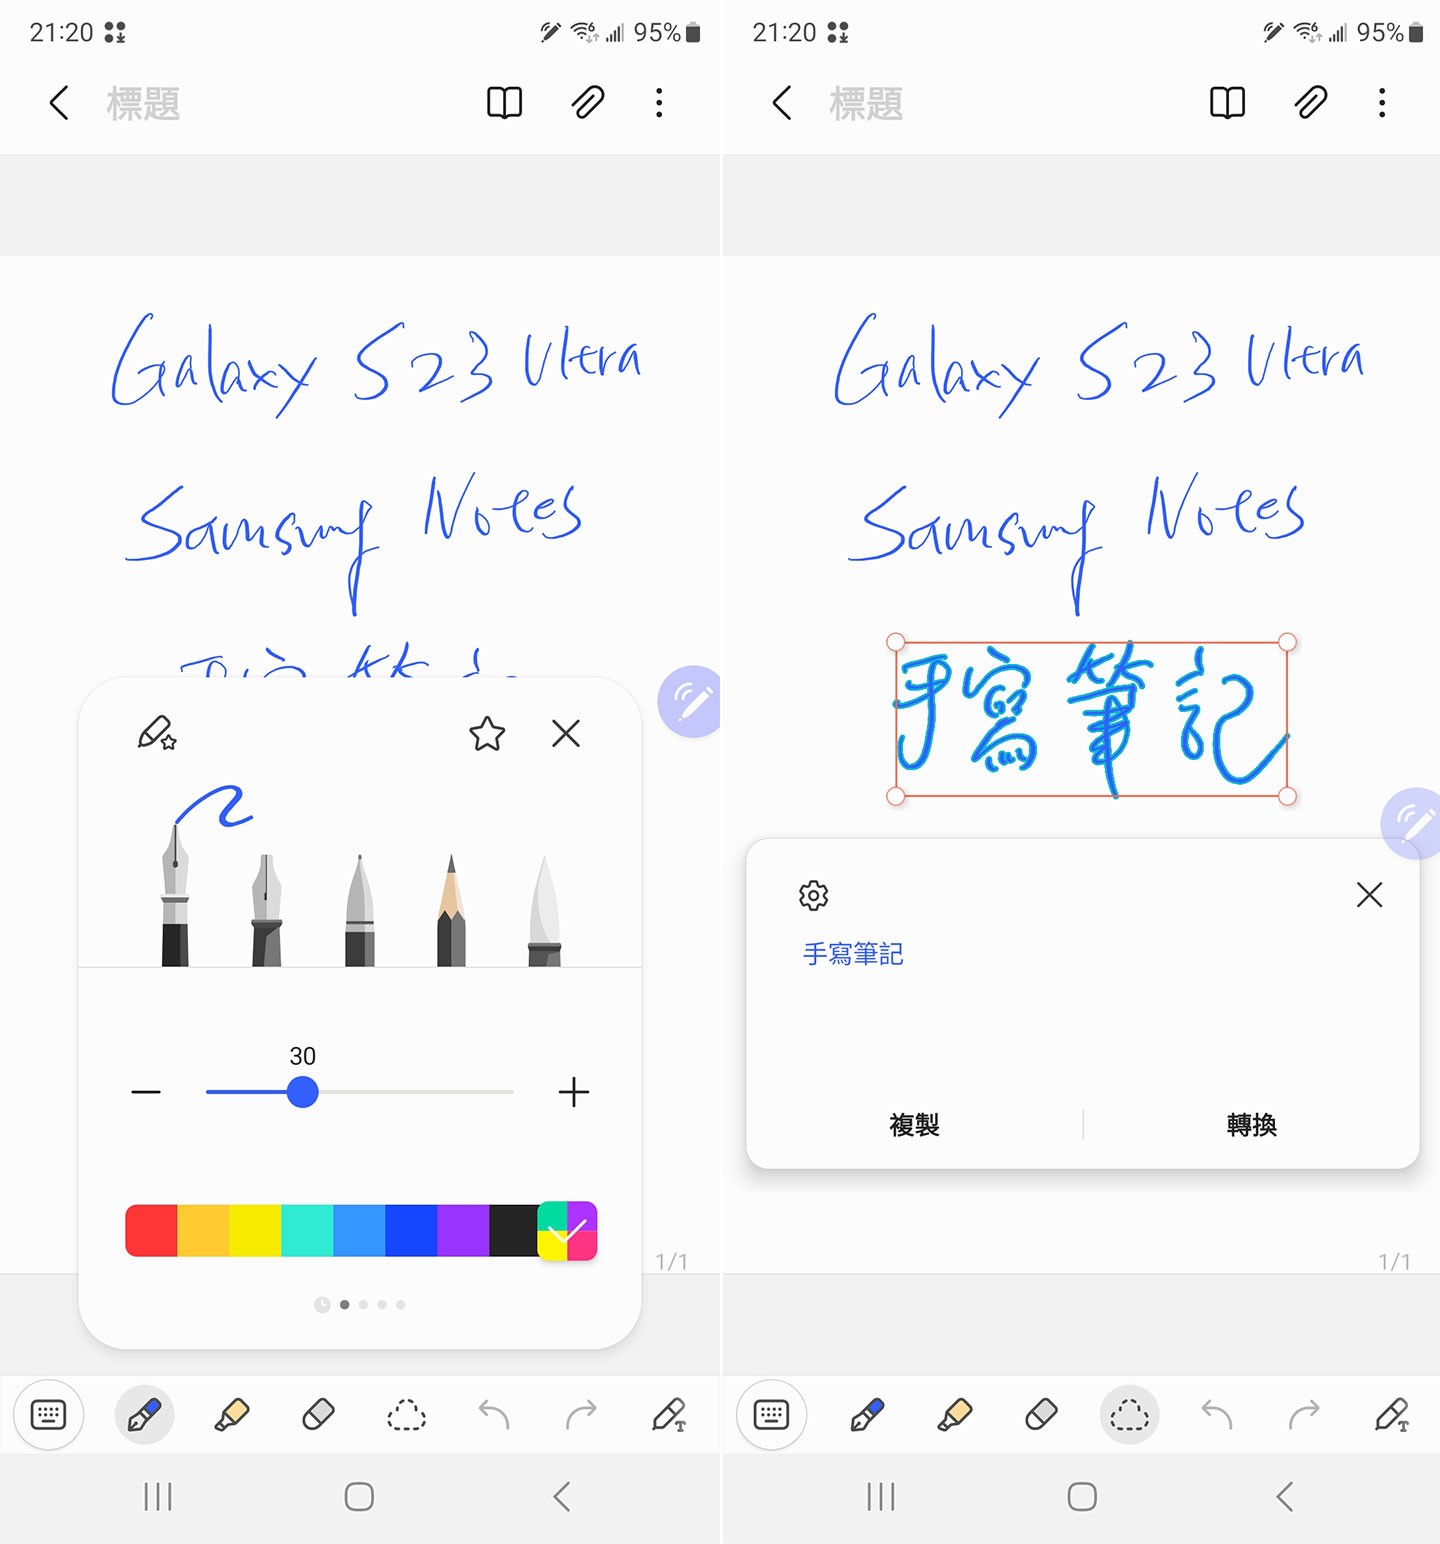 Samsung Notes 絕對是 S Pen 的最佳夥伴，除了提供完整的記功能，手寫文也能快速轉換為數位文，讓應用更加全面。